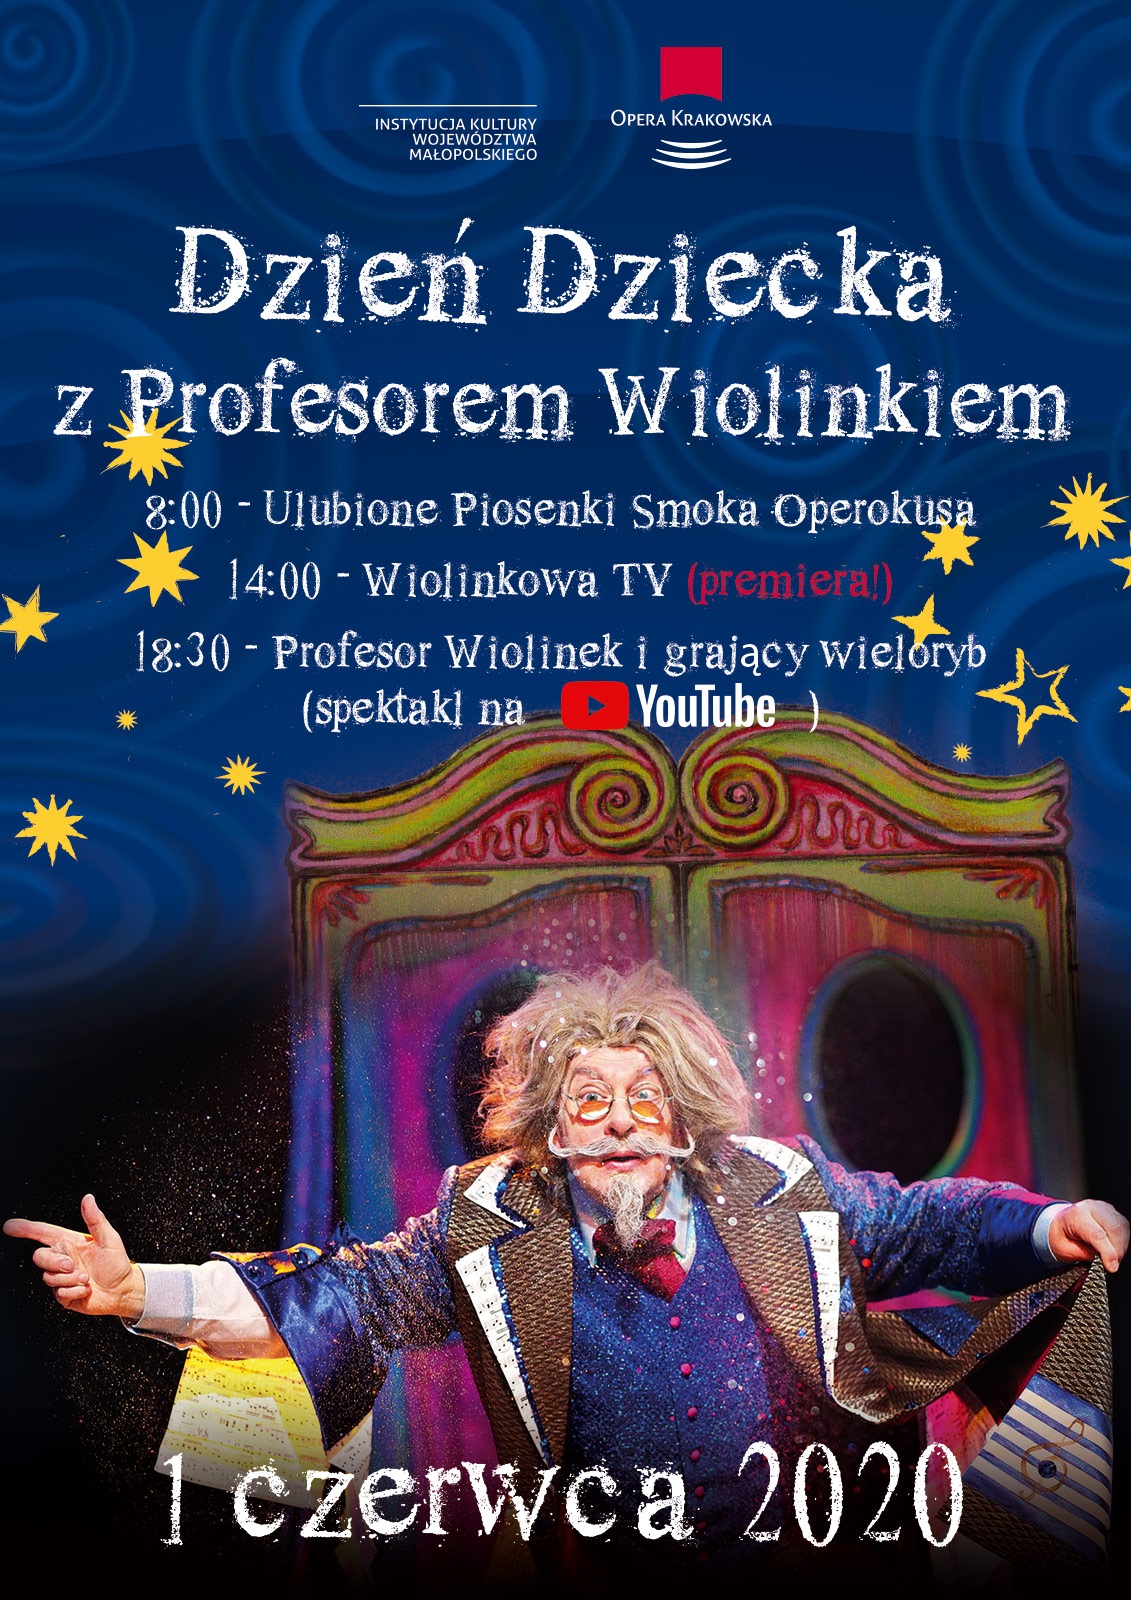 Dzień Dziecka w Operze Krakowskiej